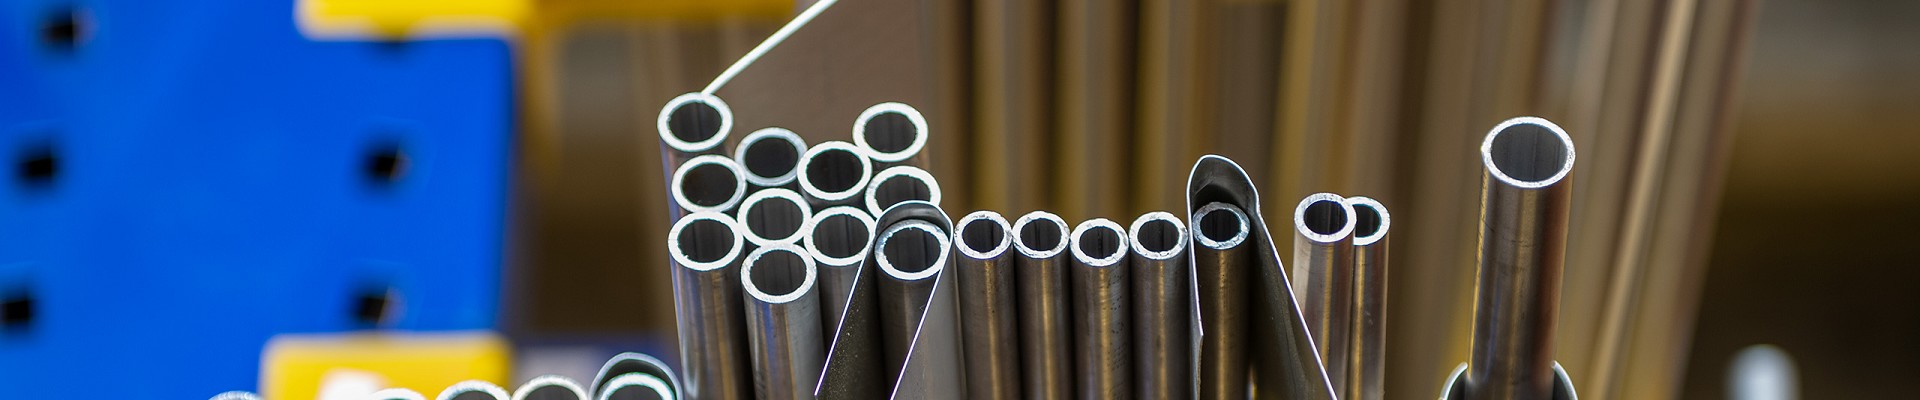 Vendita Alluminio,  Acciaio Inox e Leghe Leggere a Genova | Lastre Tubi Profilati Alluminio